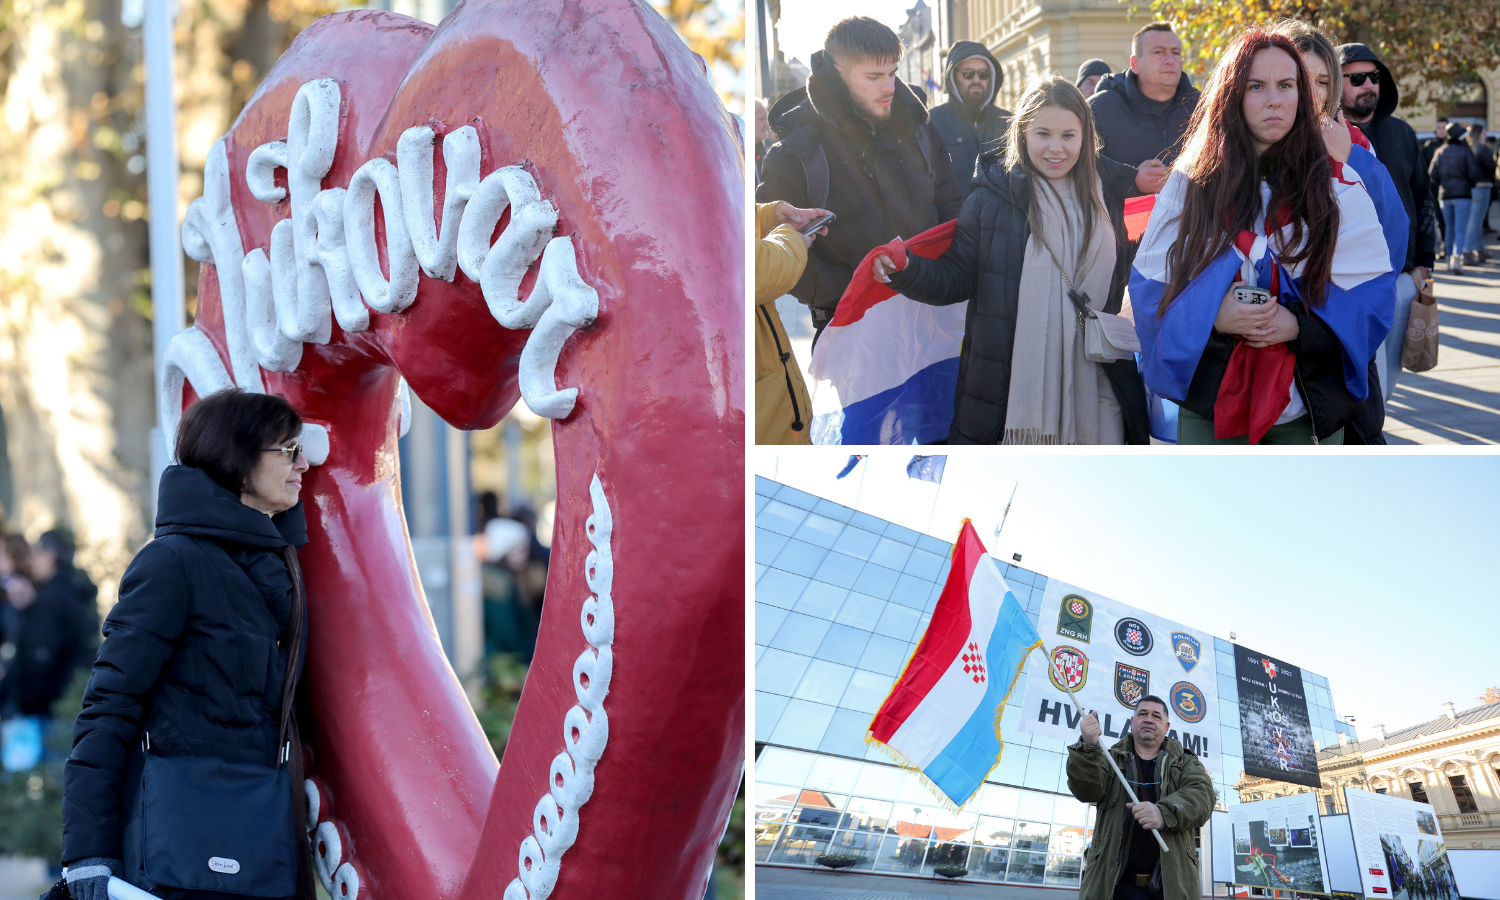 Najveća Kolona sjećanja: Kroz Vukovar je prošlo 150.000 ljudi